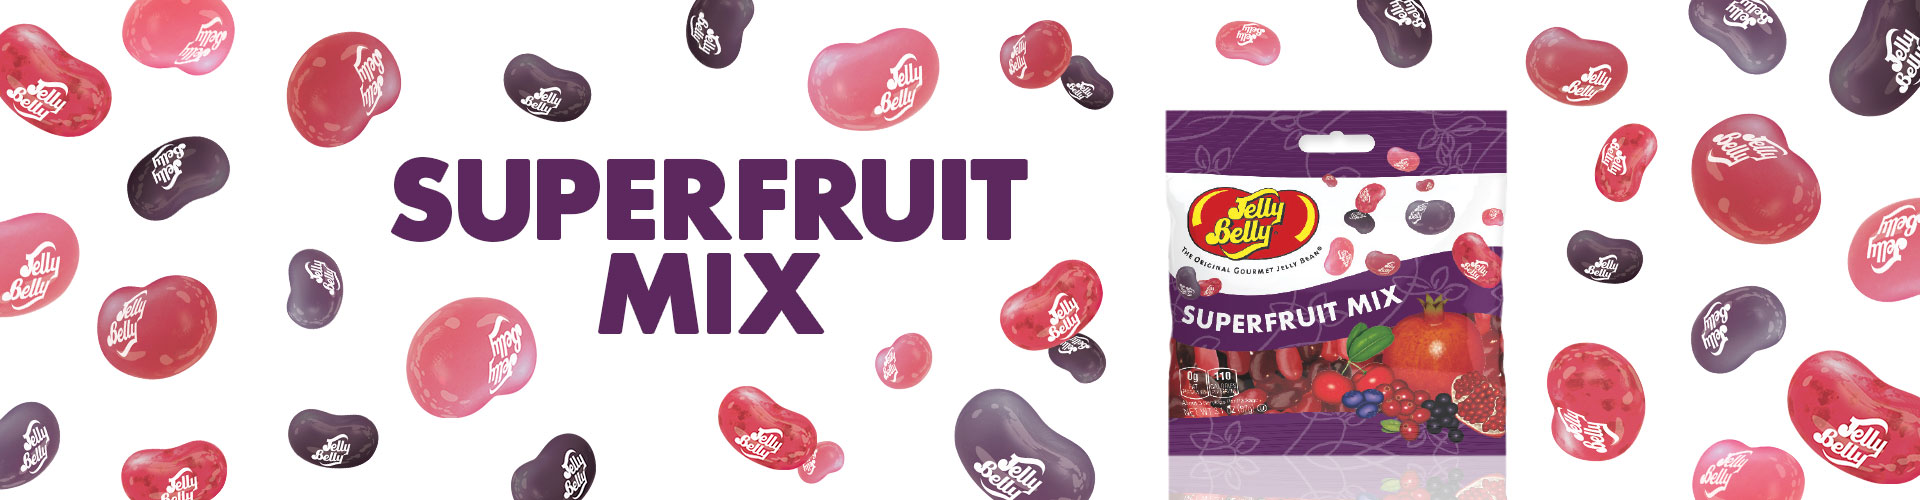 Superfruit Mix